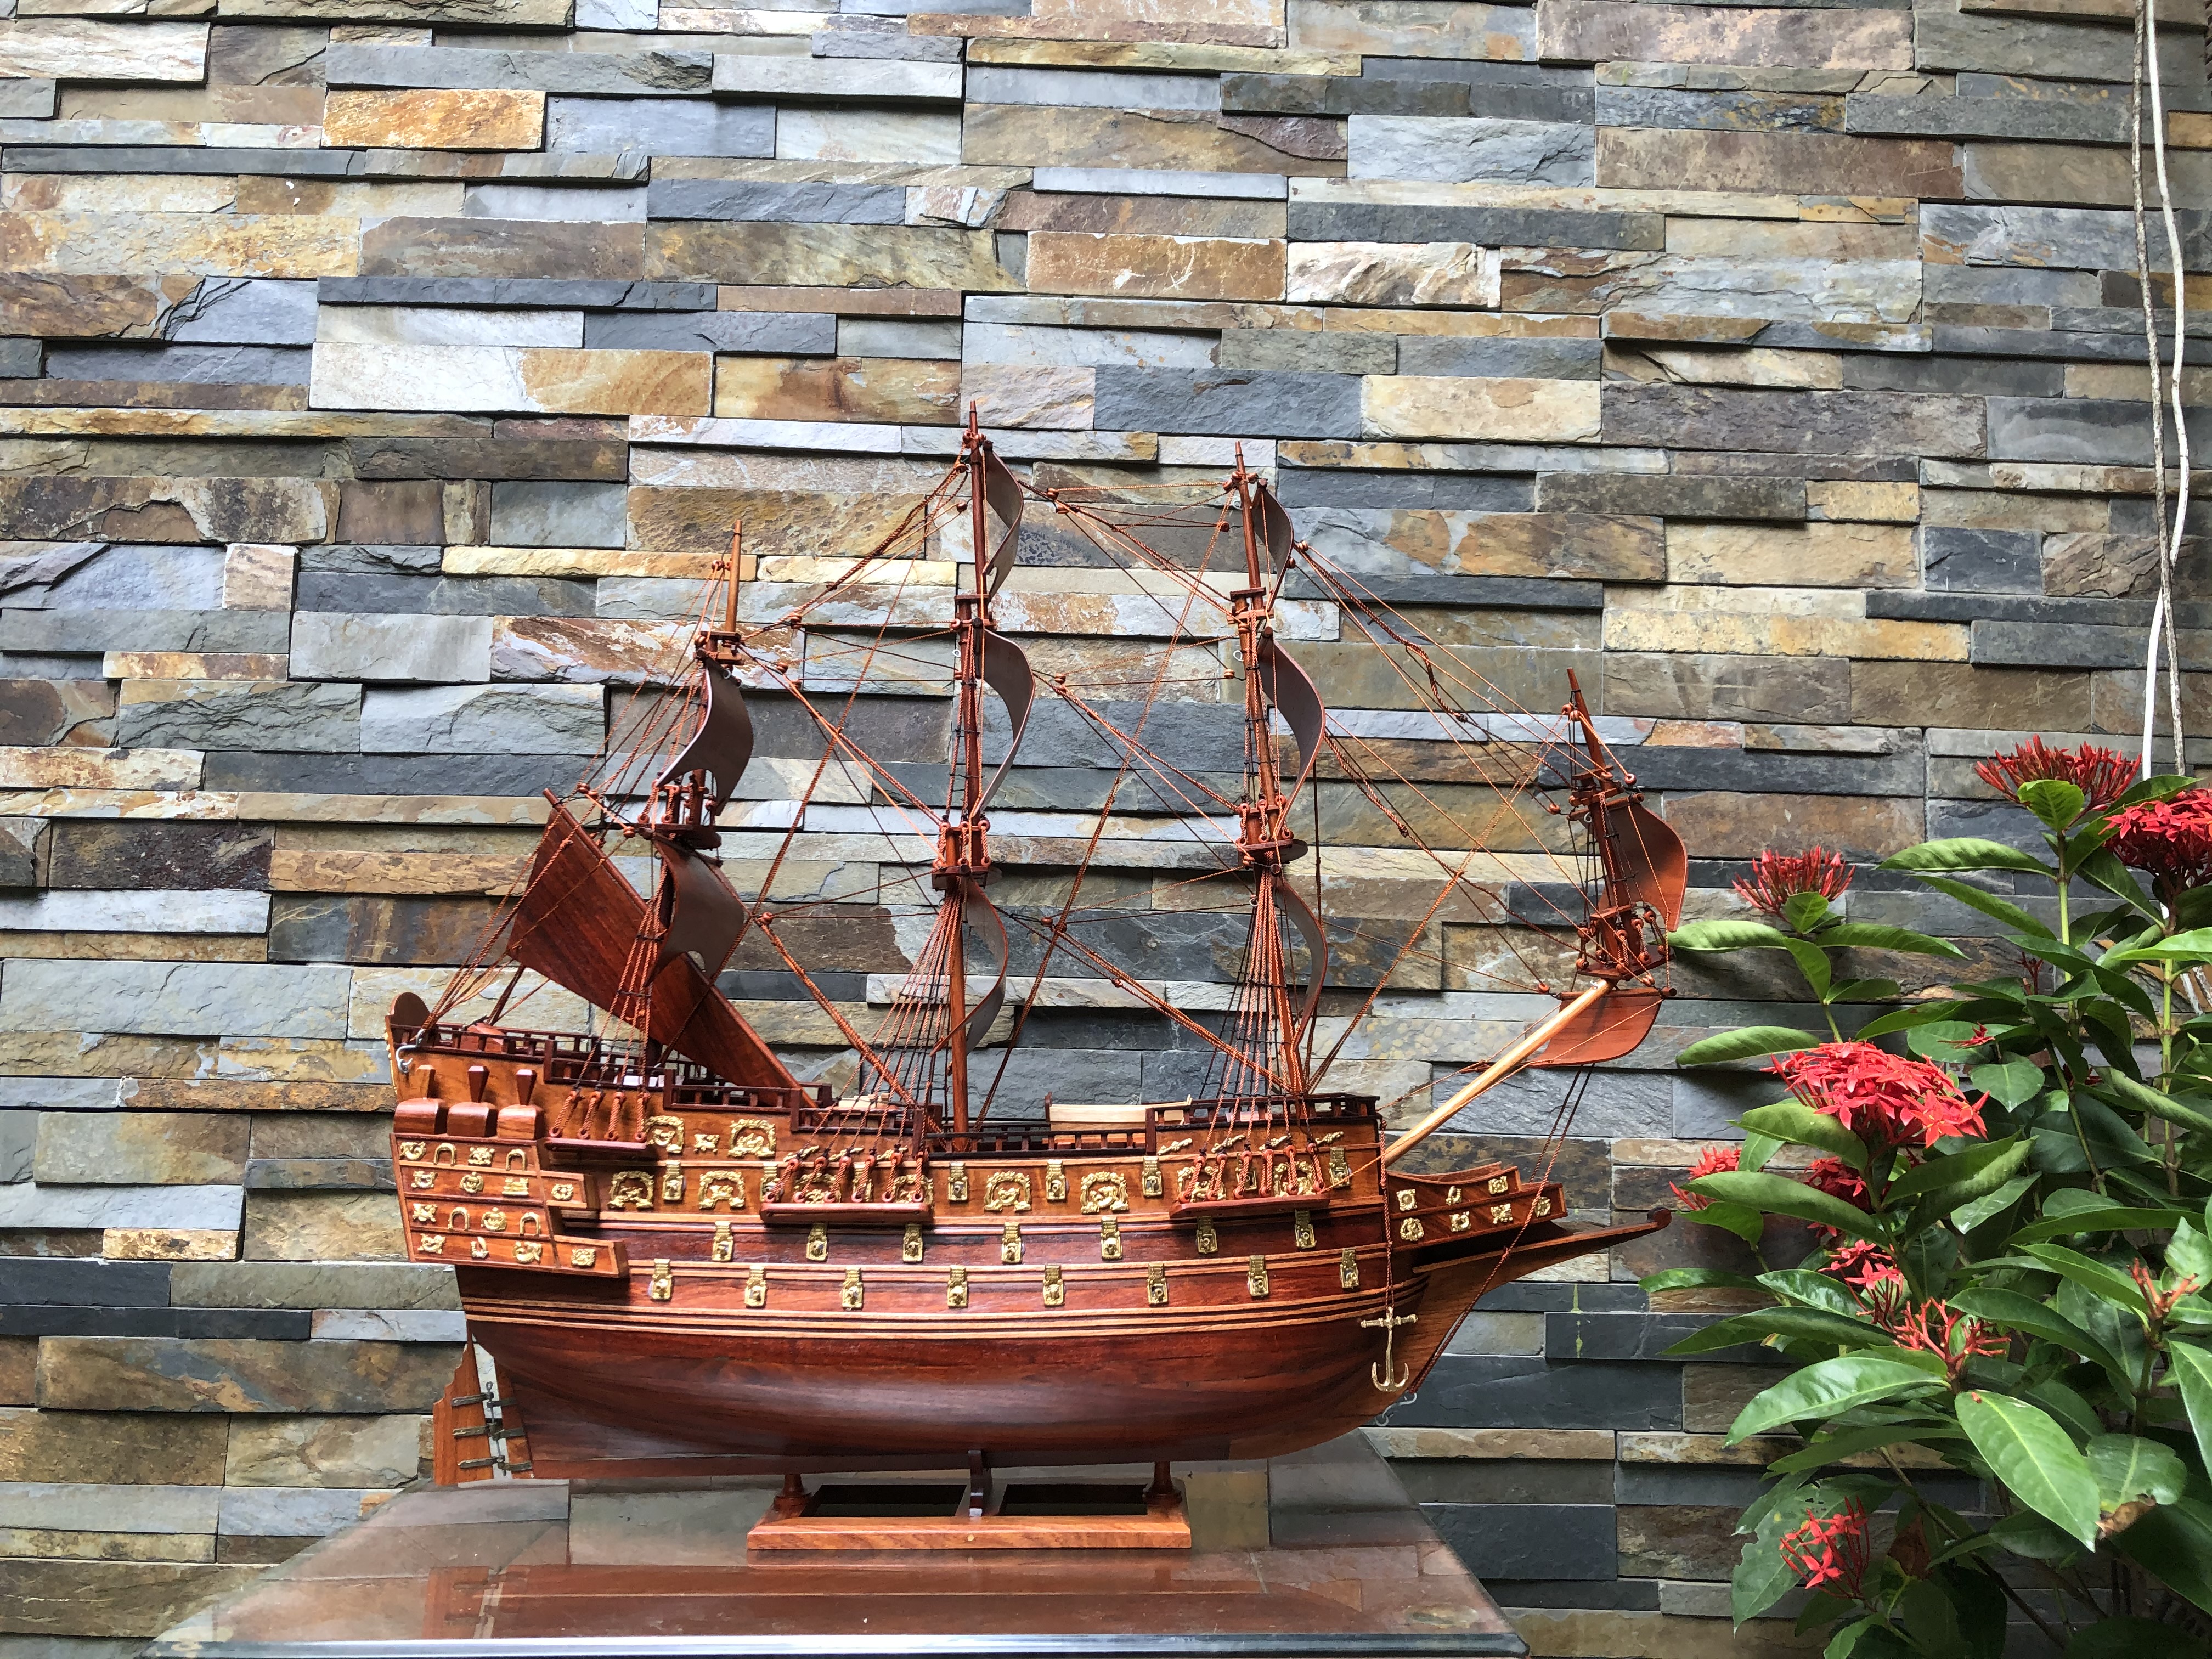 Mua hình thuyền buồm 60cm quà tặng khai trương công ty ý nghĩa được làm bằng chất liệu gỗ hương ta cao cấp